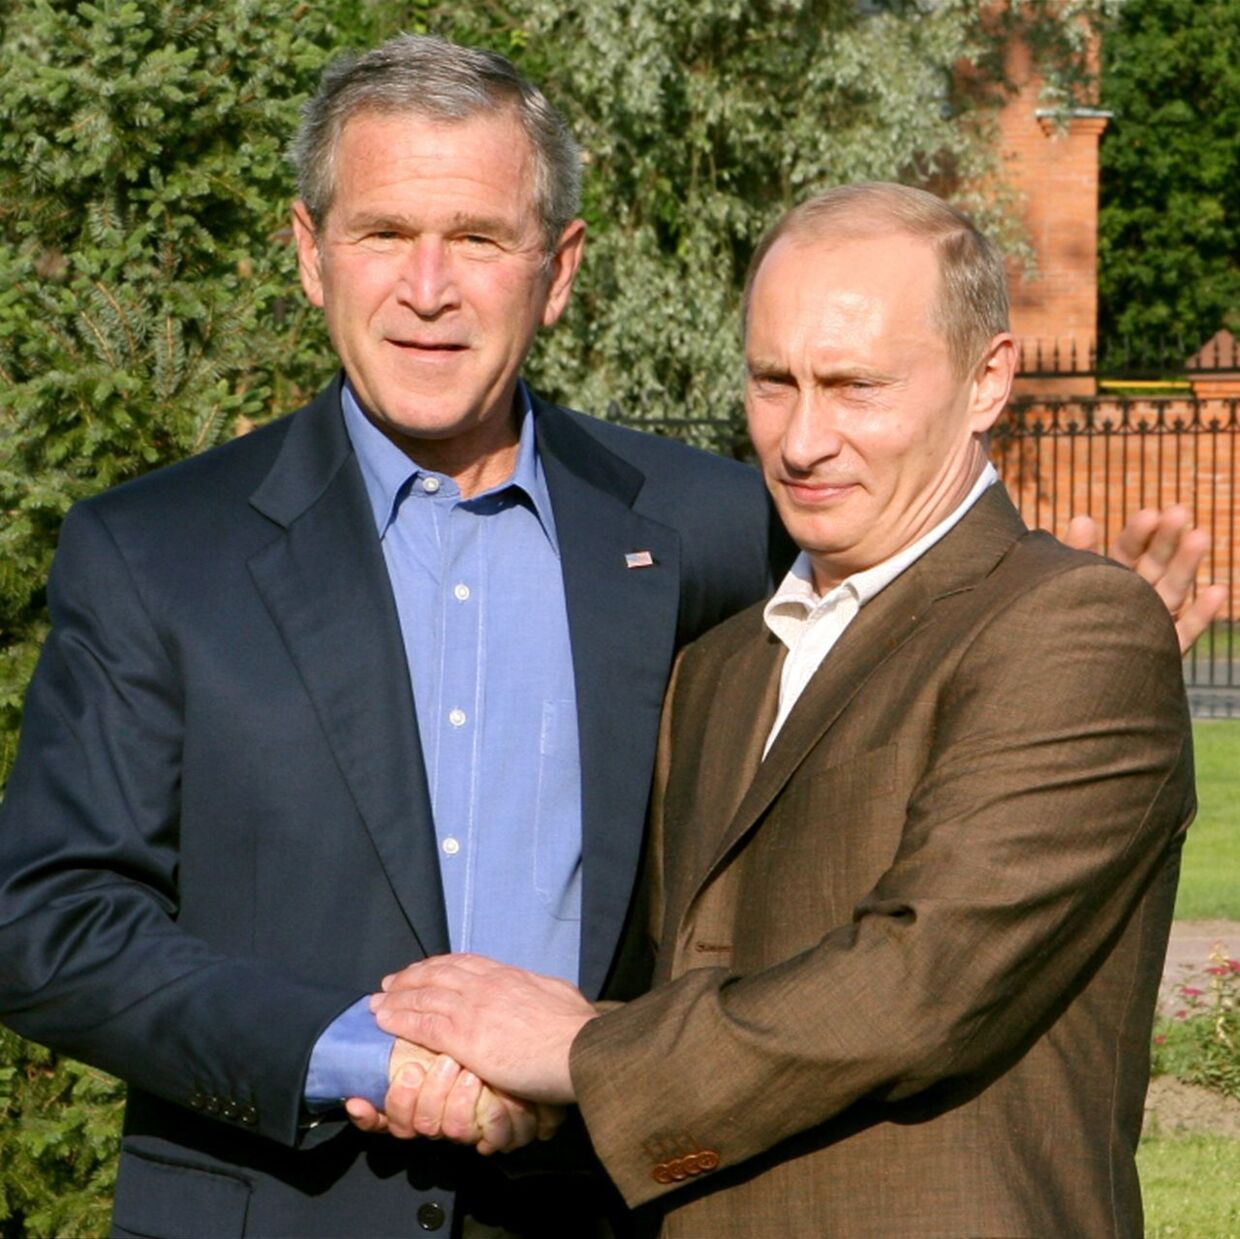 Så gode venner var lederne fra USA og Rusland dengang i sommeren 2006, George W. Bush og Vladimir Putin. 17 år er længe siden.